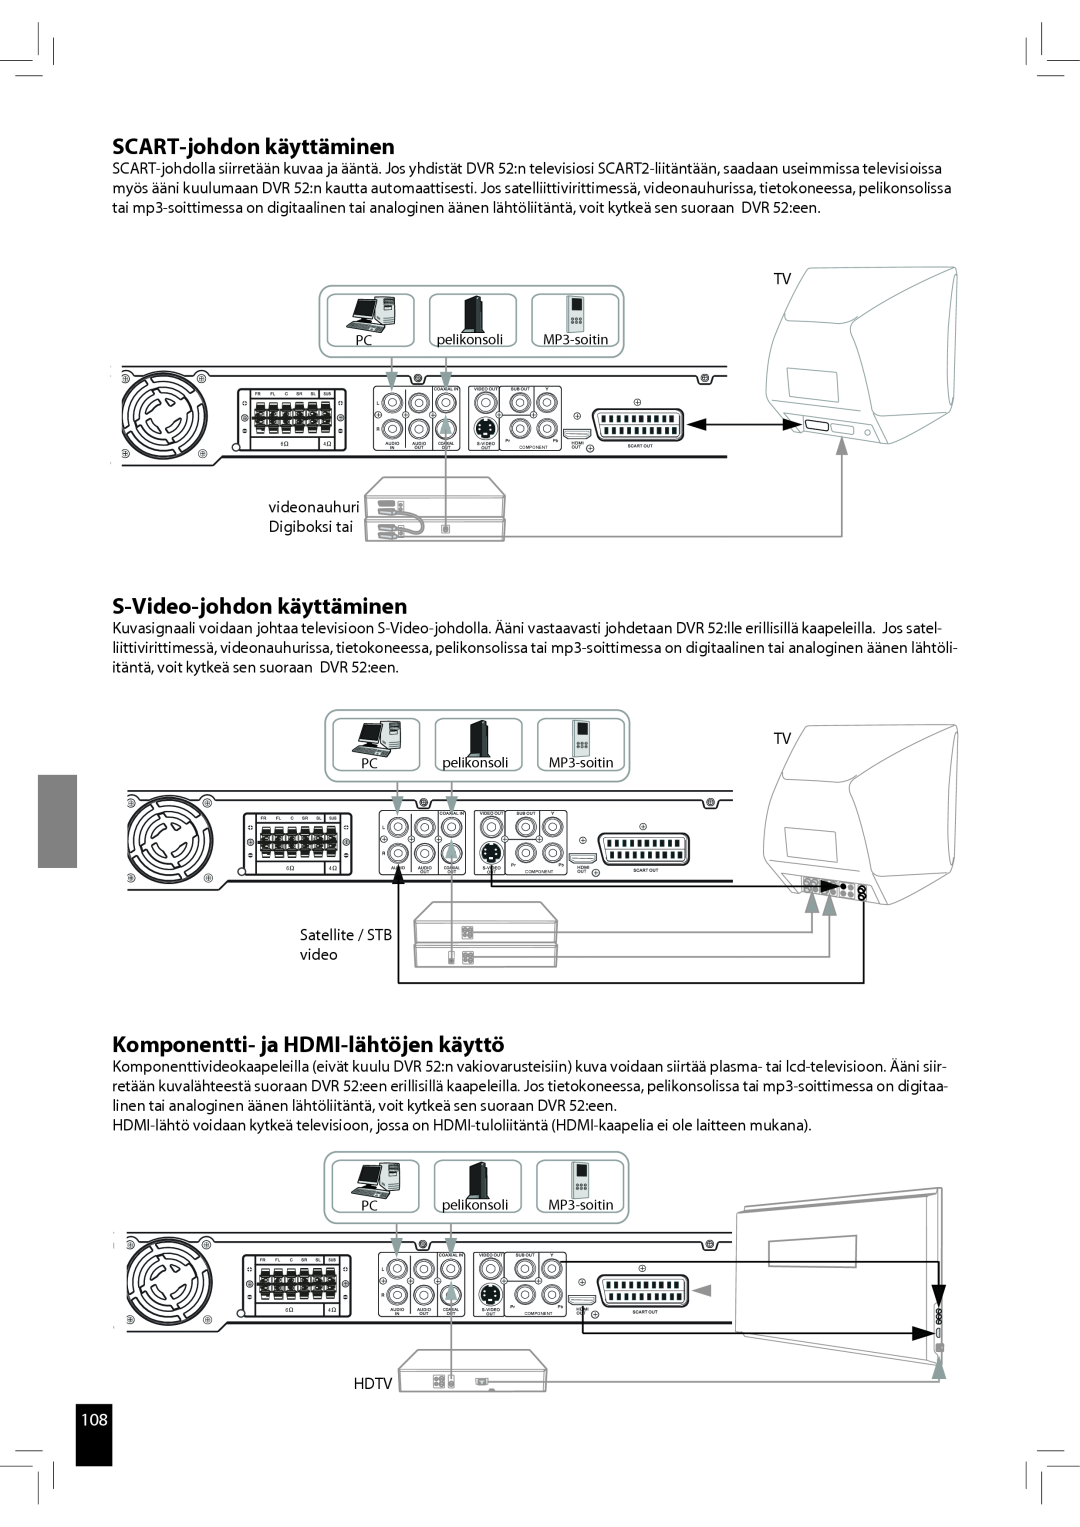 JAMO S 502 manual SCART-johdonkäyttäminen, S-Video-johdonkäyttäminen, Komponentti- ja HDMI-lähtöjenkäyttö 